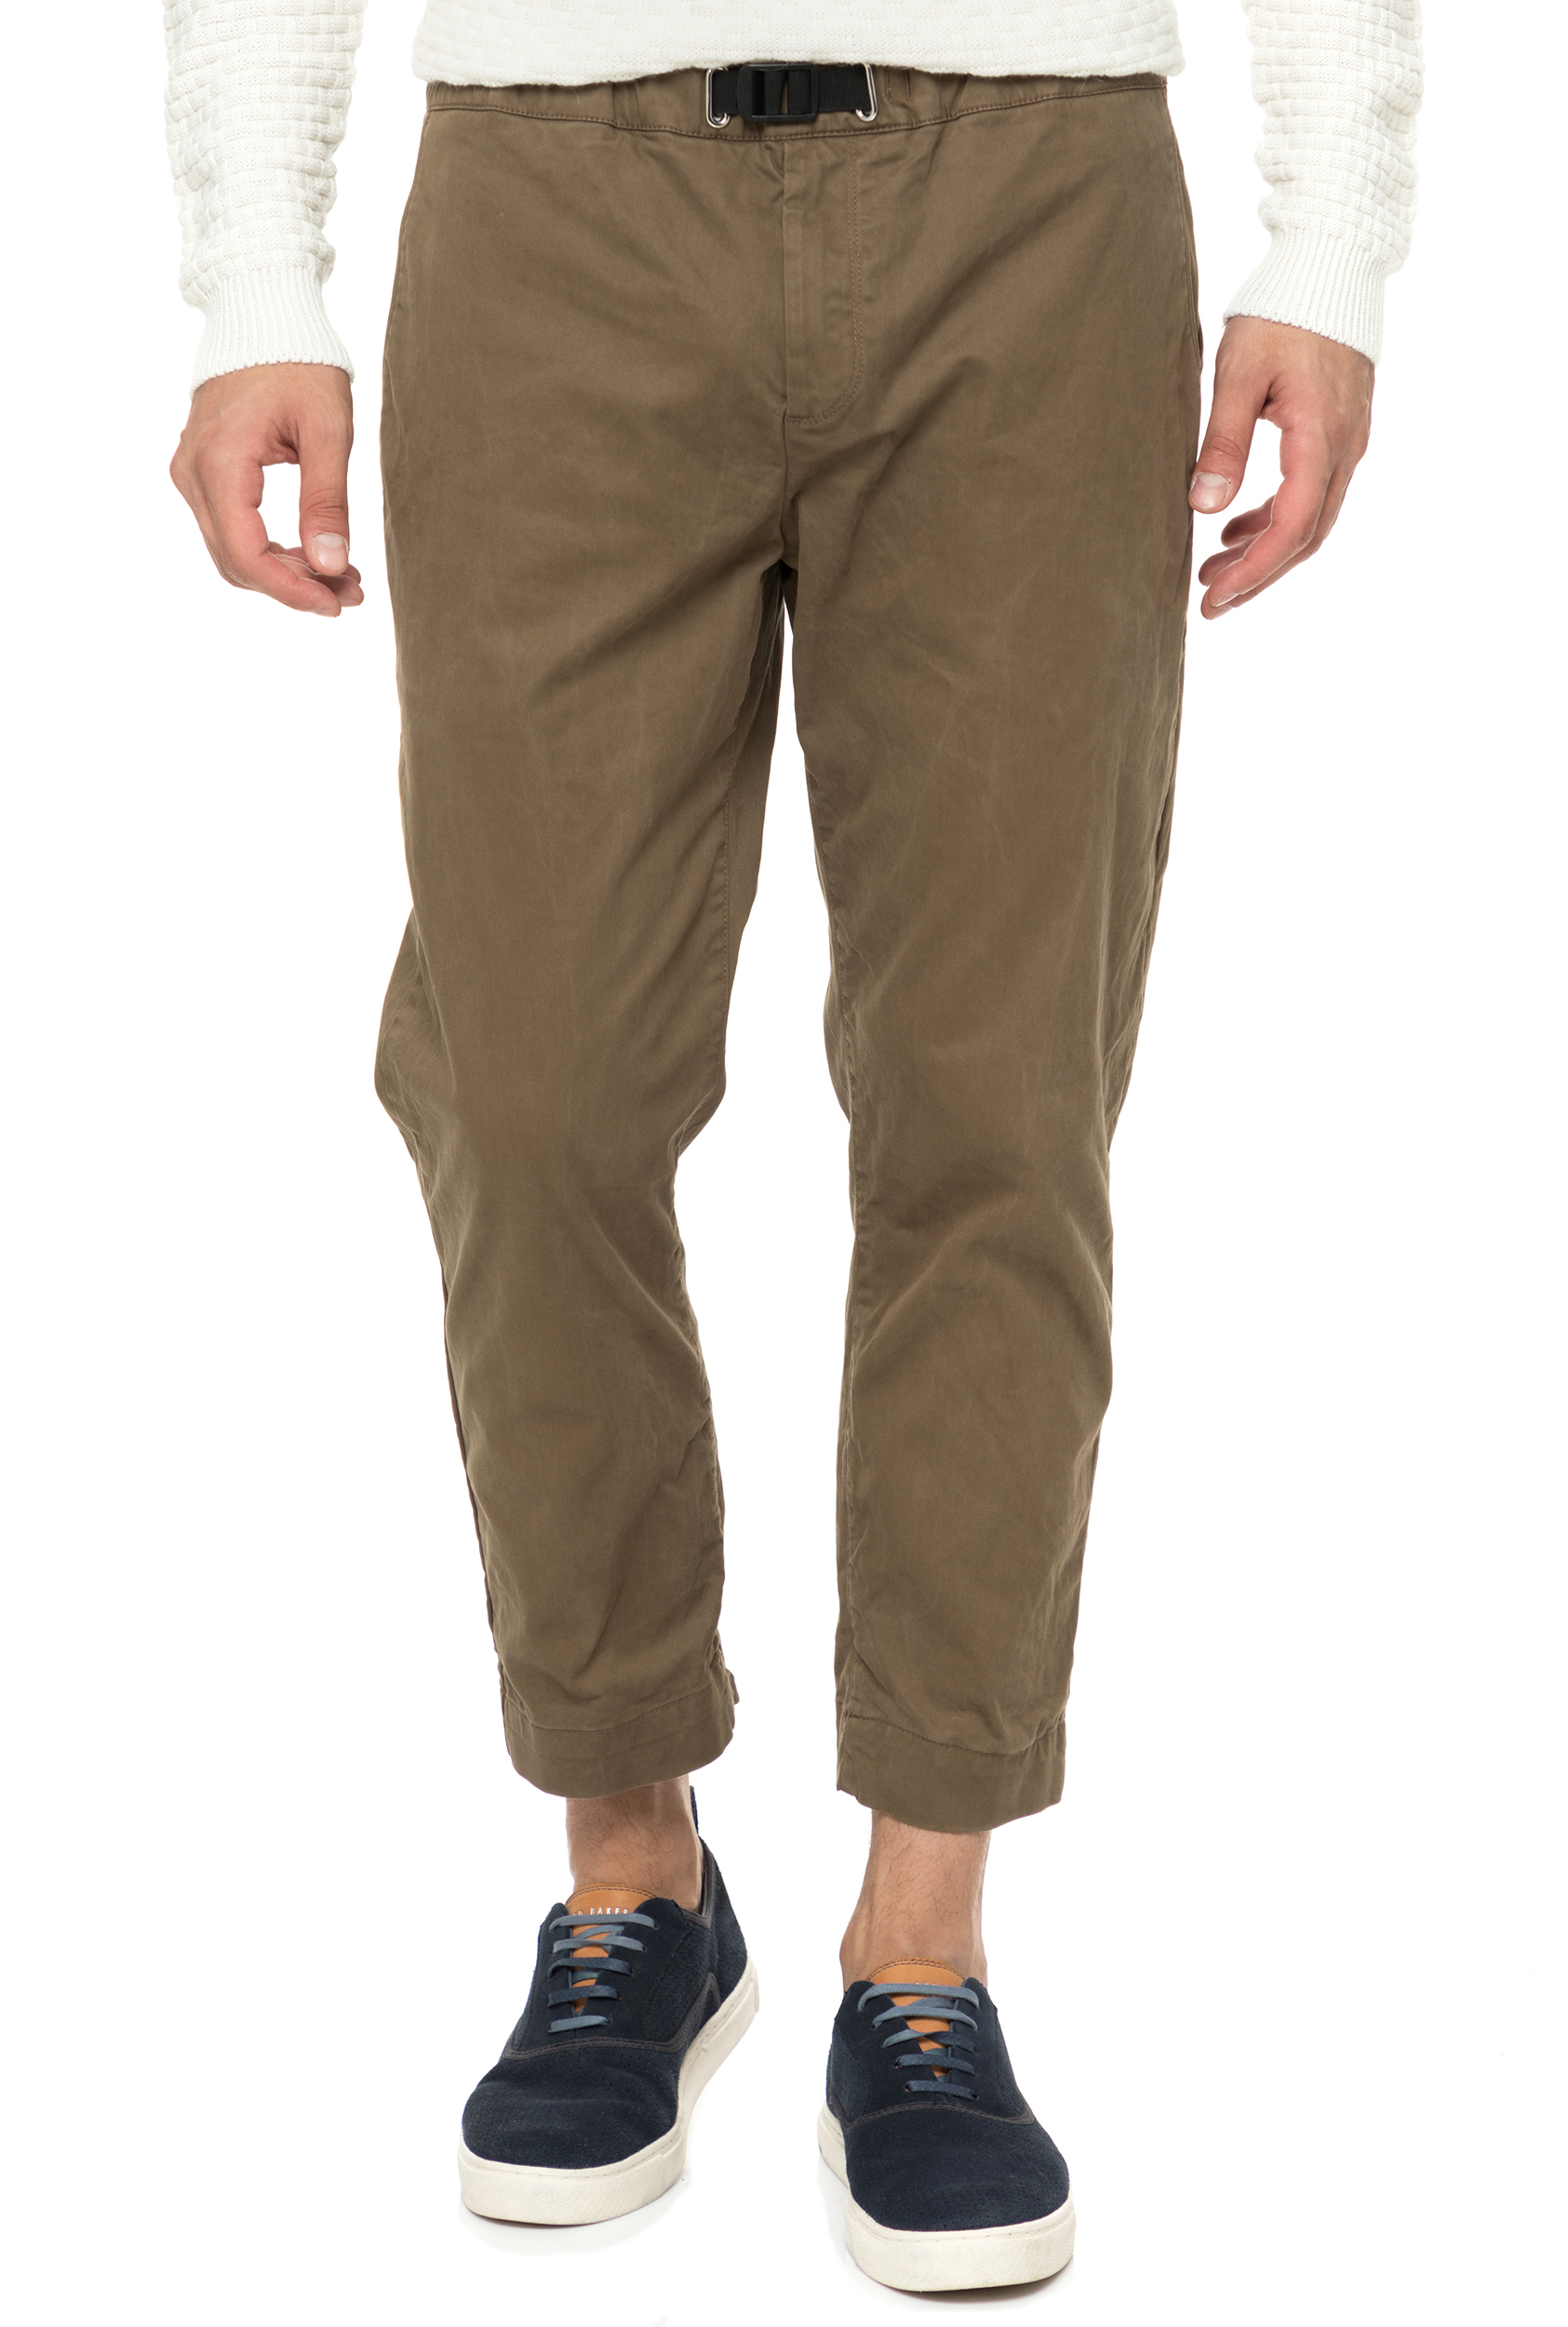 Ανδρικά/Ρούχα/Παντελόνια/Chinos BROOKSFIELD - Ανδρικό παντελόνι BROOKSFIELD λαδί